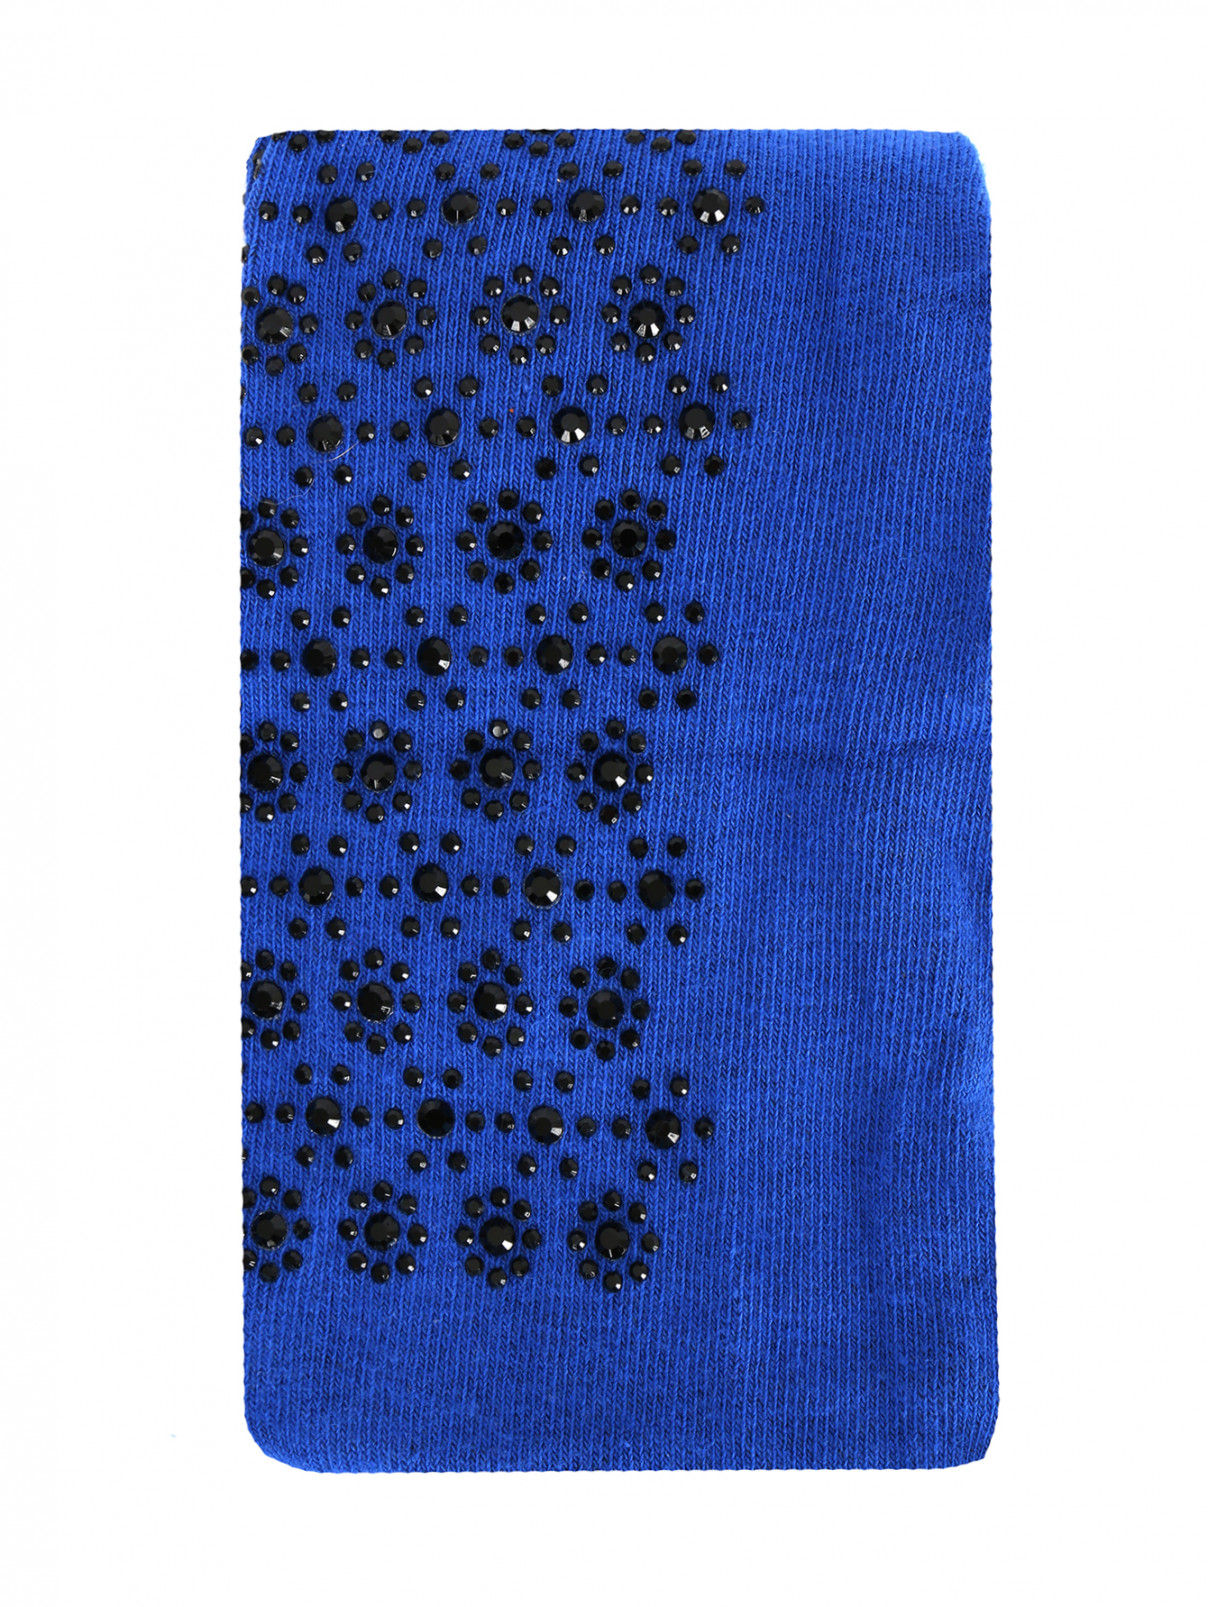 Колготки декорированные стразами MiMiSol  –  Общий вид  – Цвет:  Синий